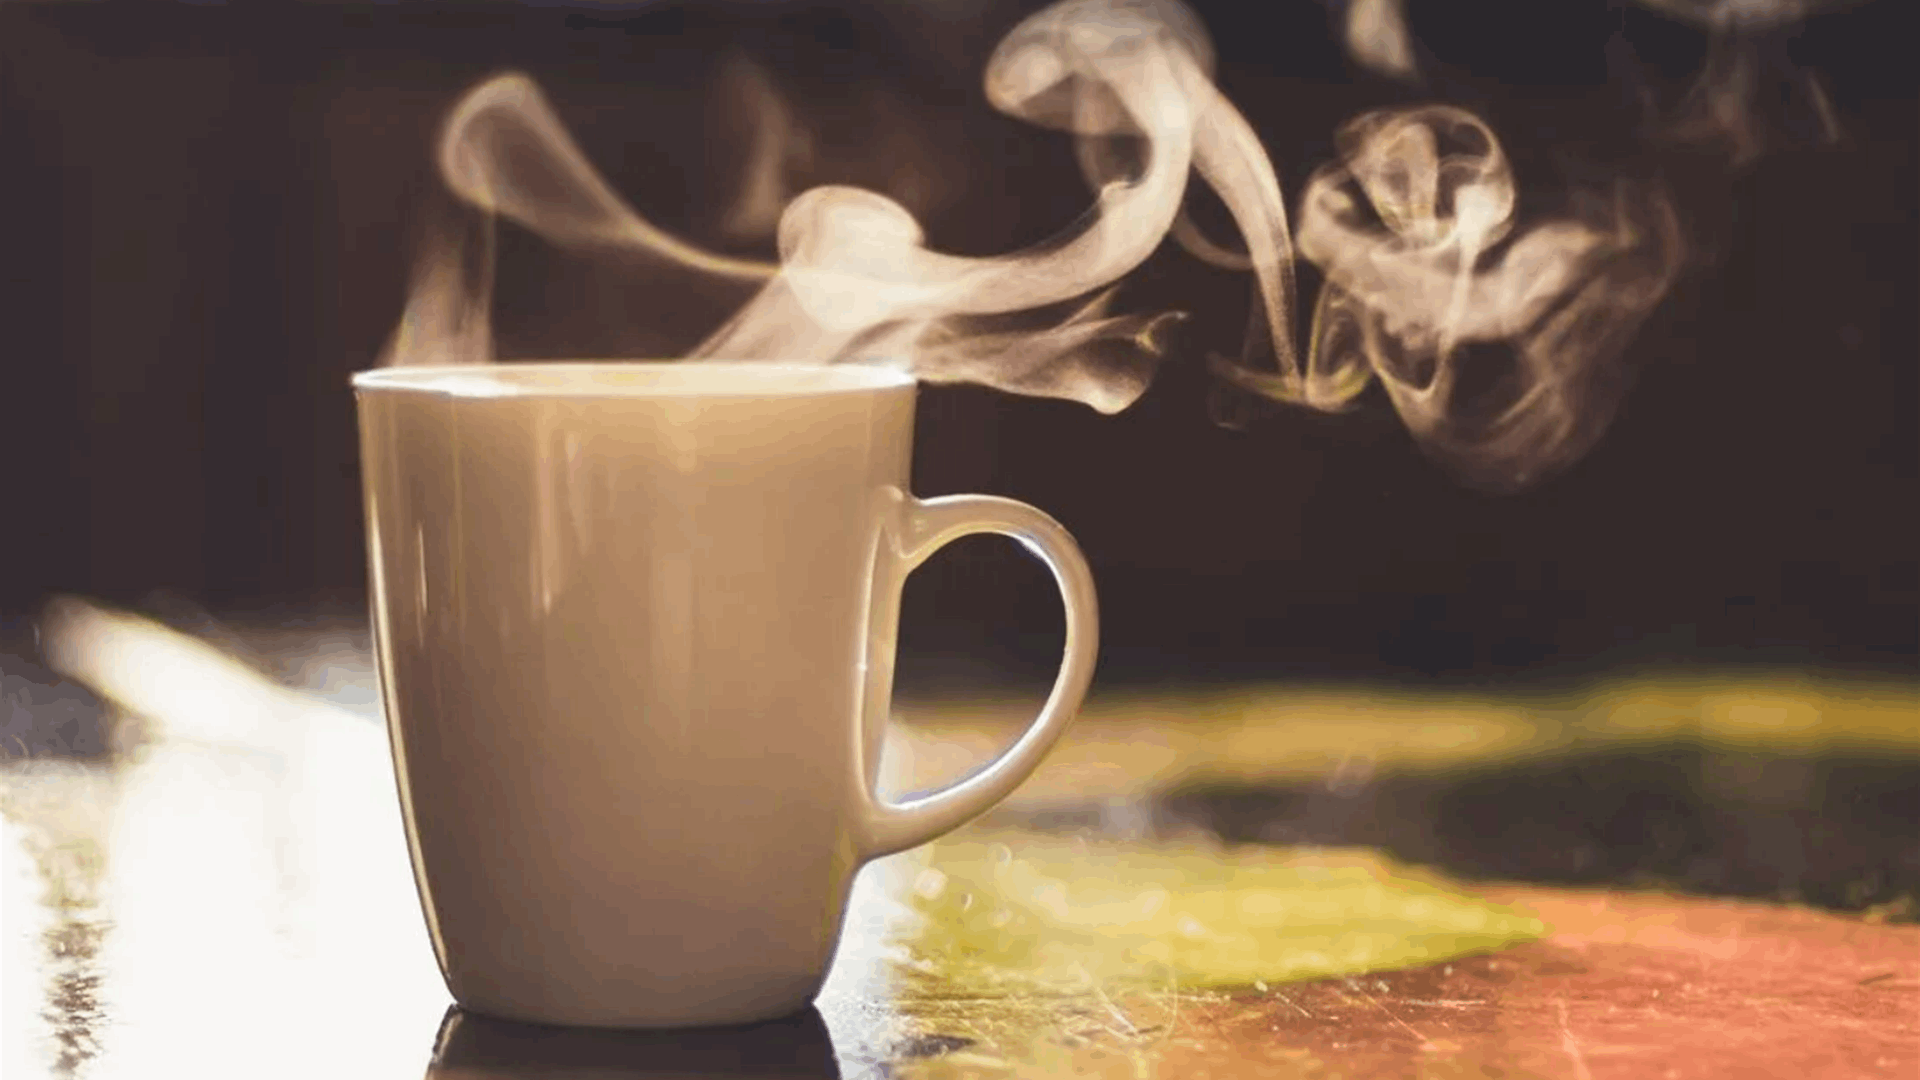 لماذا عليك عدم شرب القهوة أبداً خلال الساعة الأولى من الاستيقاظ؟